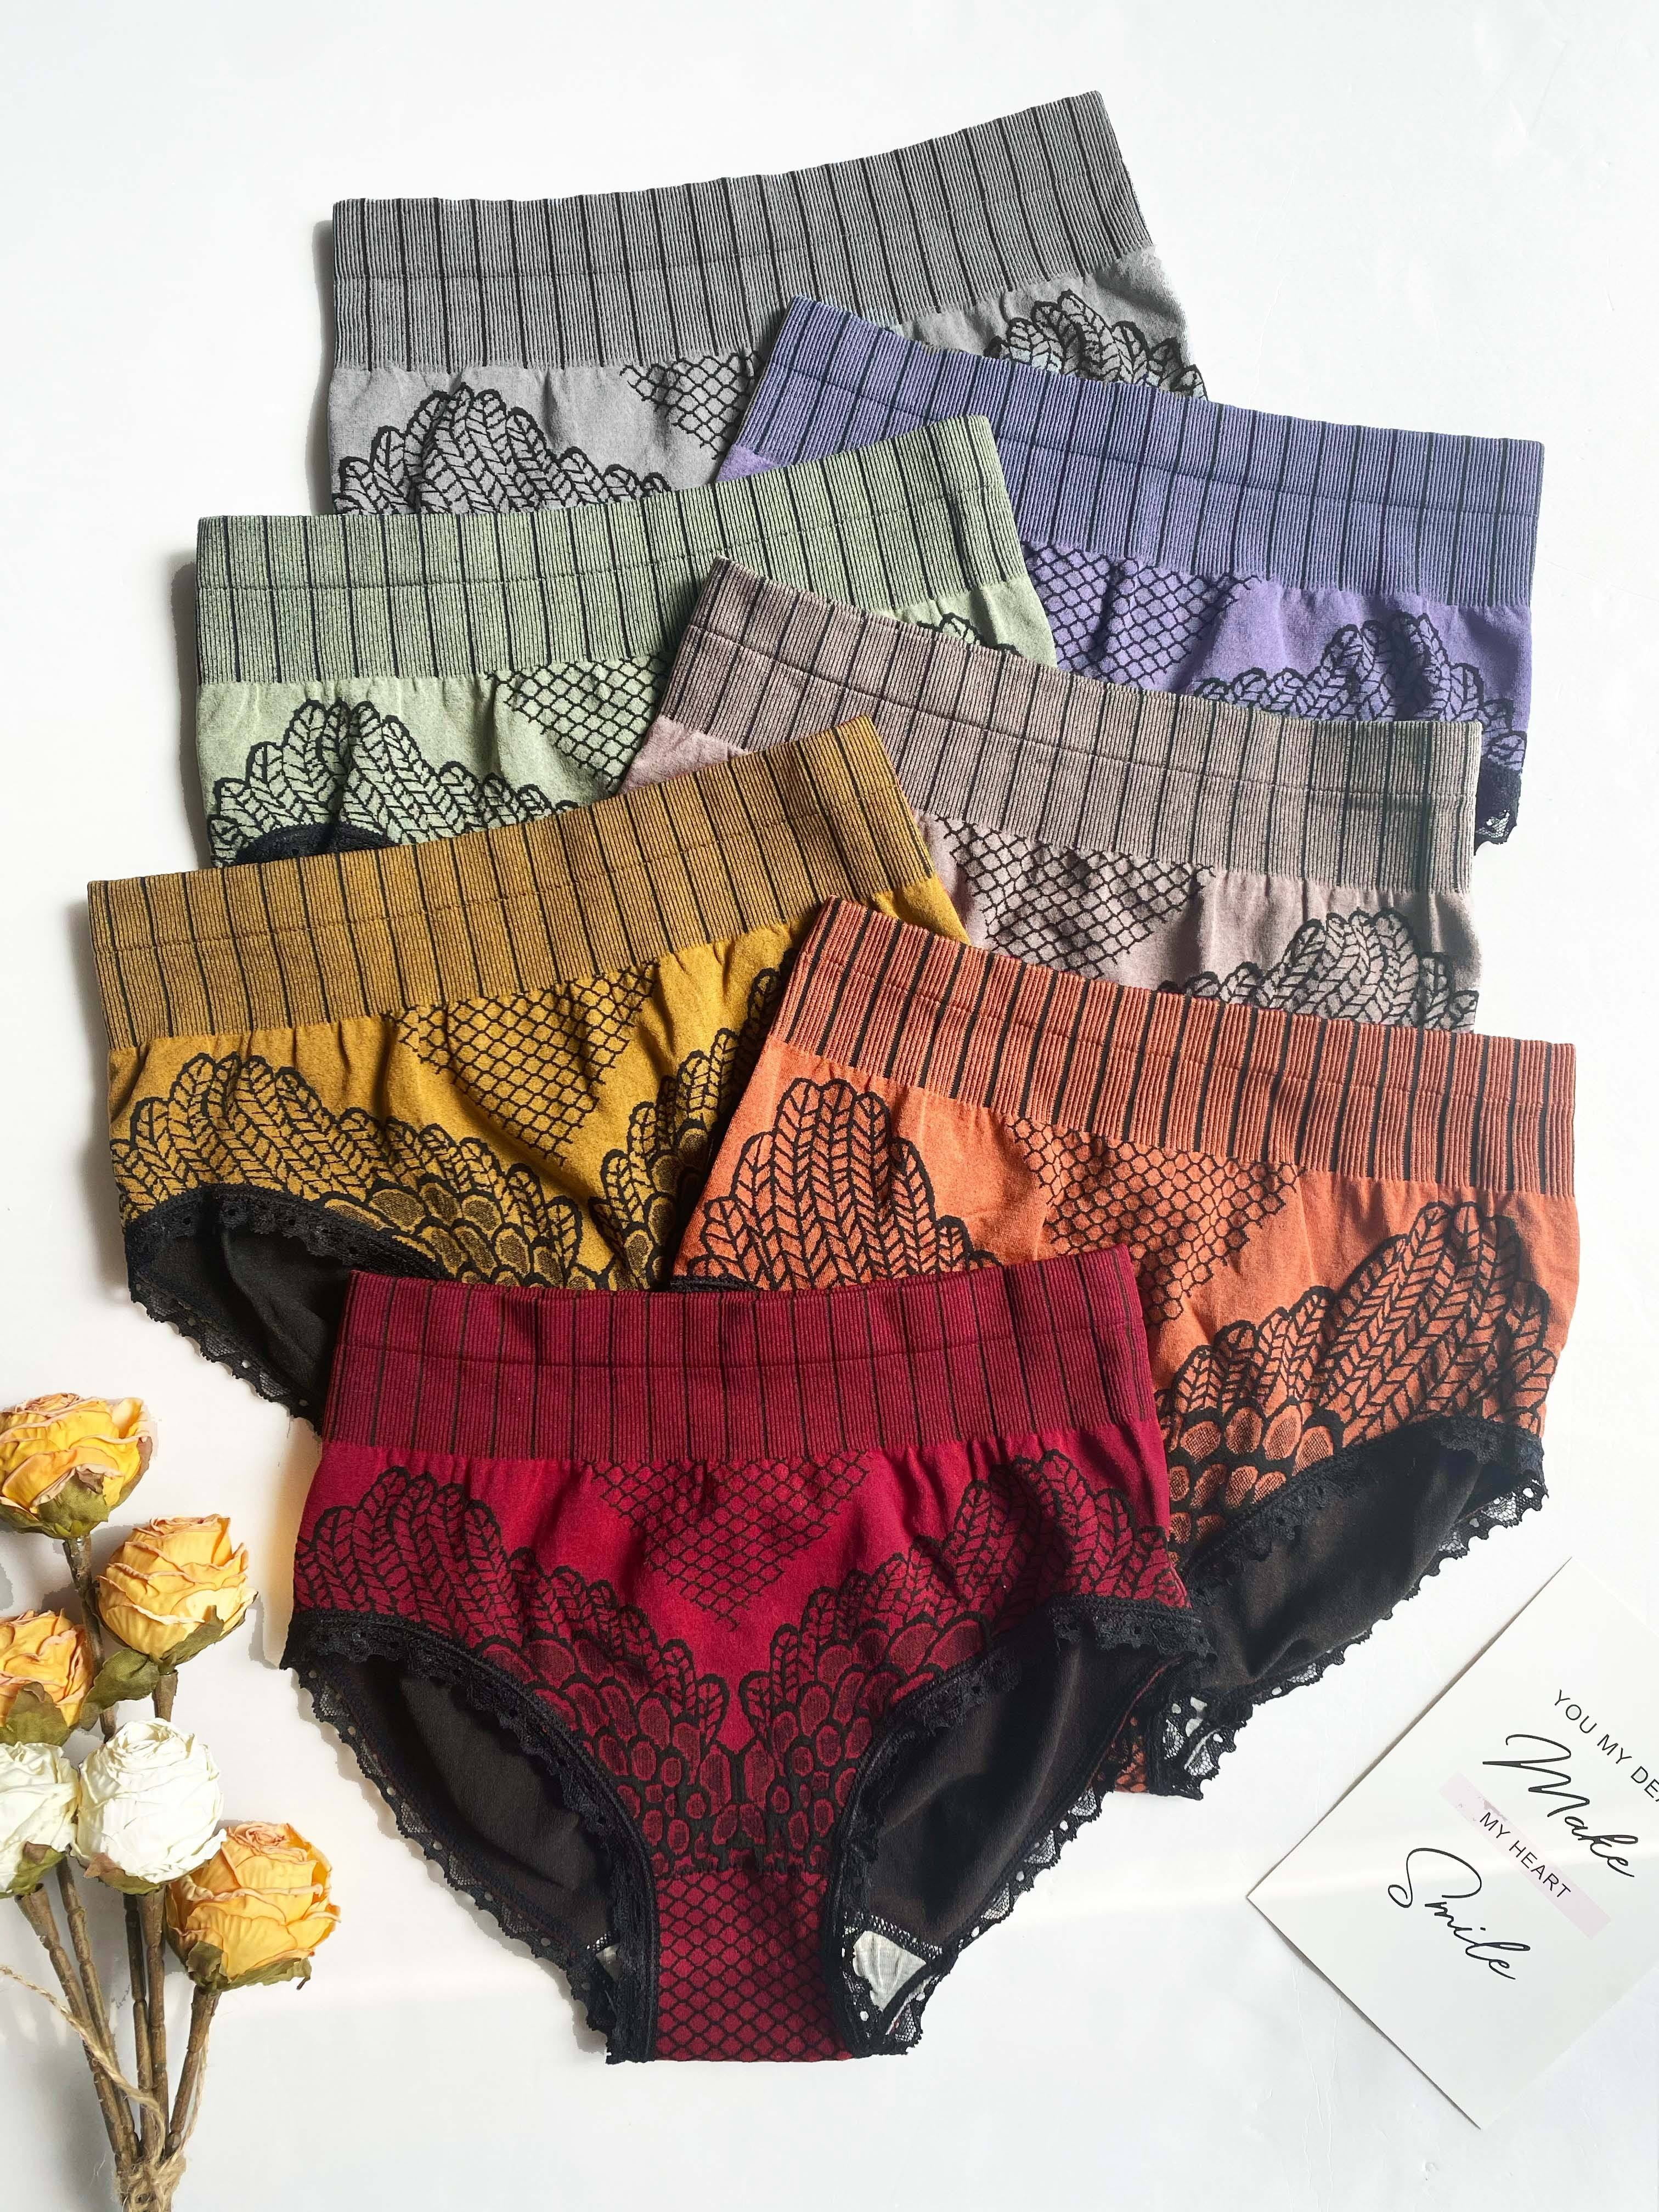 Ackermans Lace Underwear - Temu